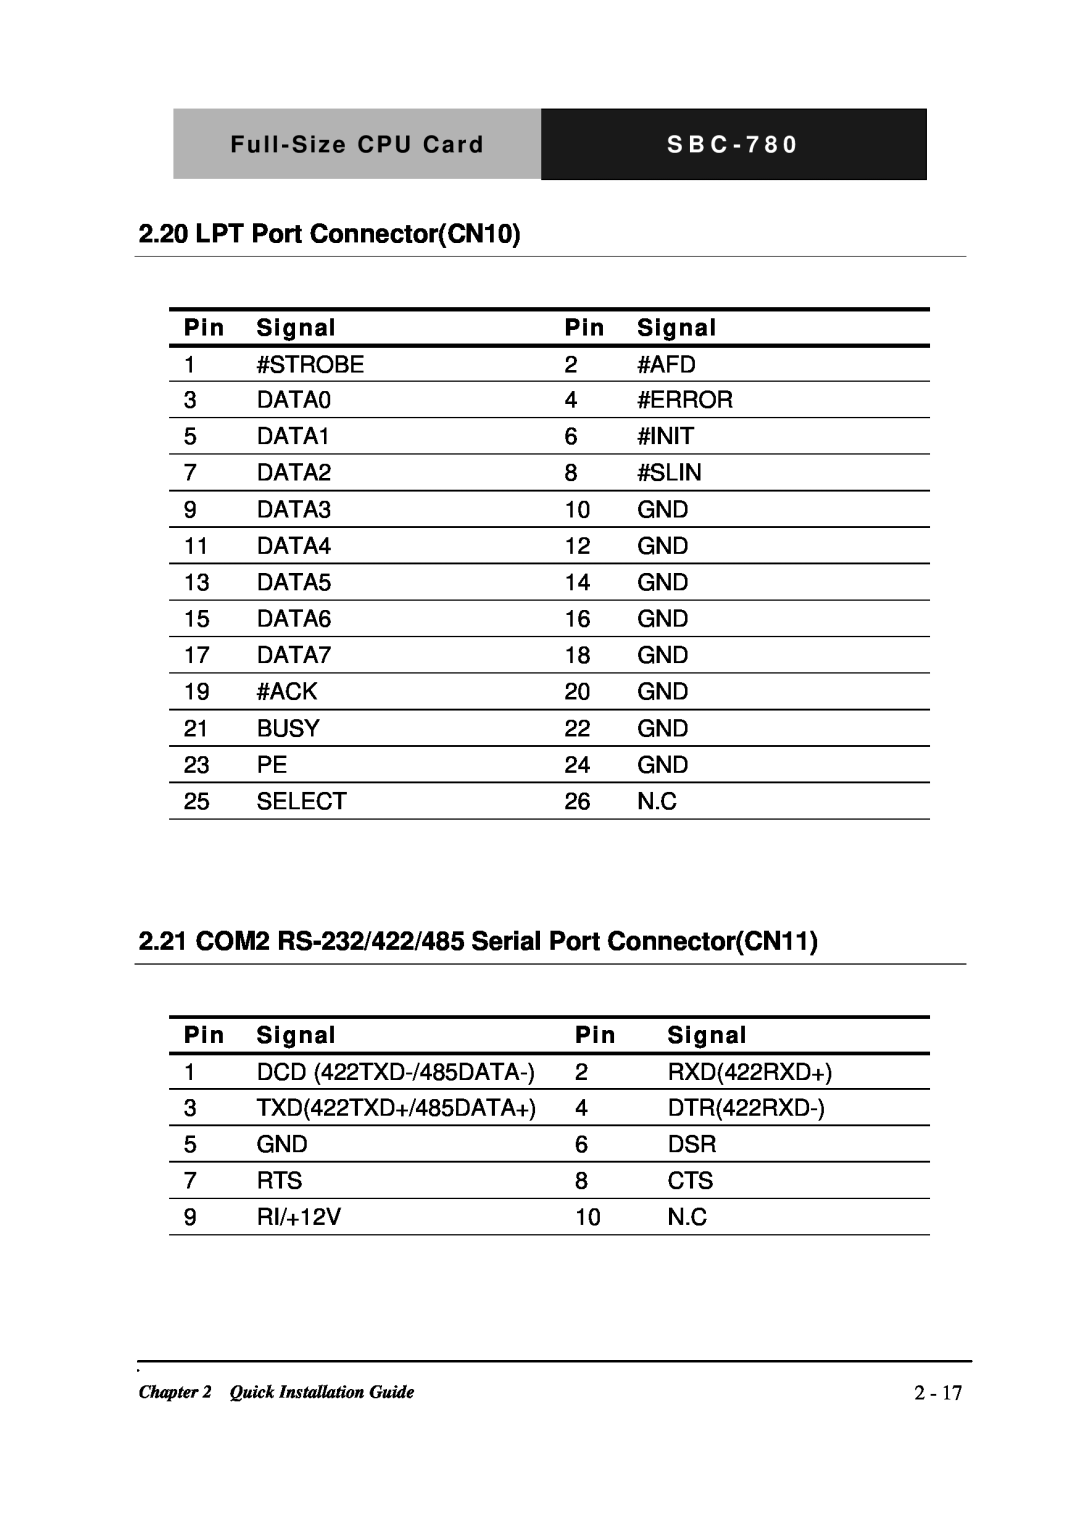 Intel SBC-780 manual LPT Port ConnectorCN10, 2.21 COM2 RS-232/422/485Serial Port ConnectorCN11, S B C - 7 8 